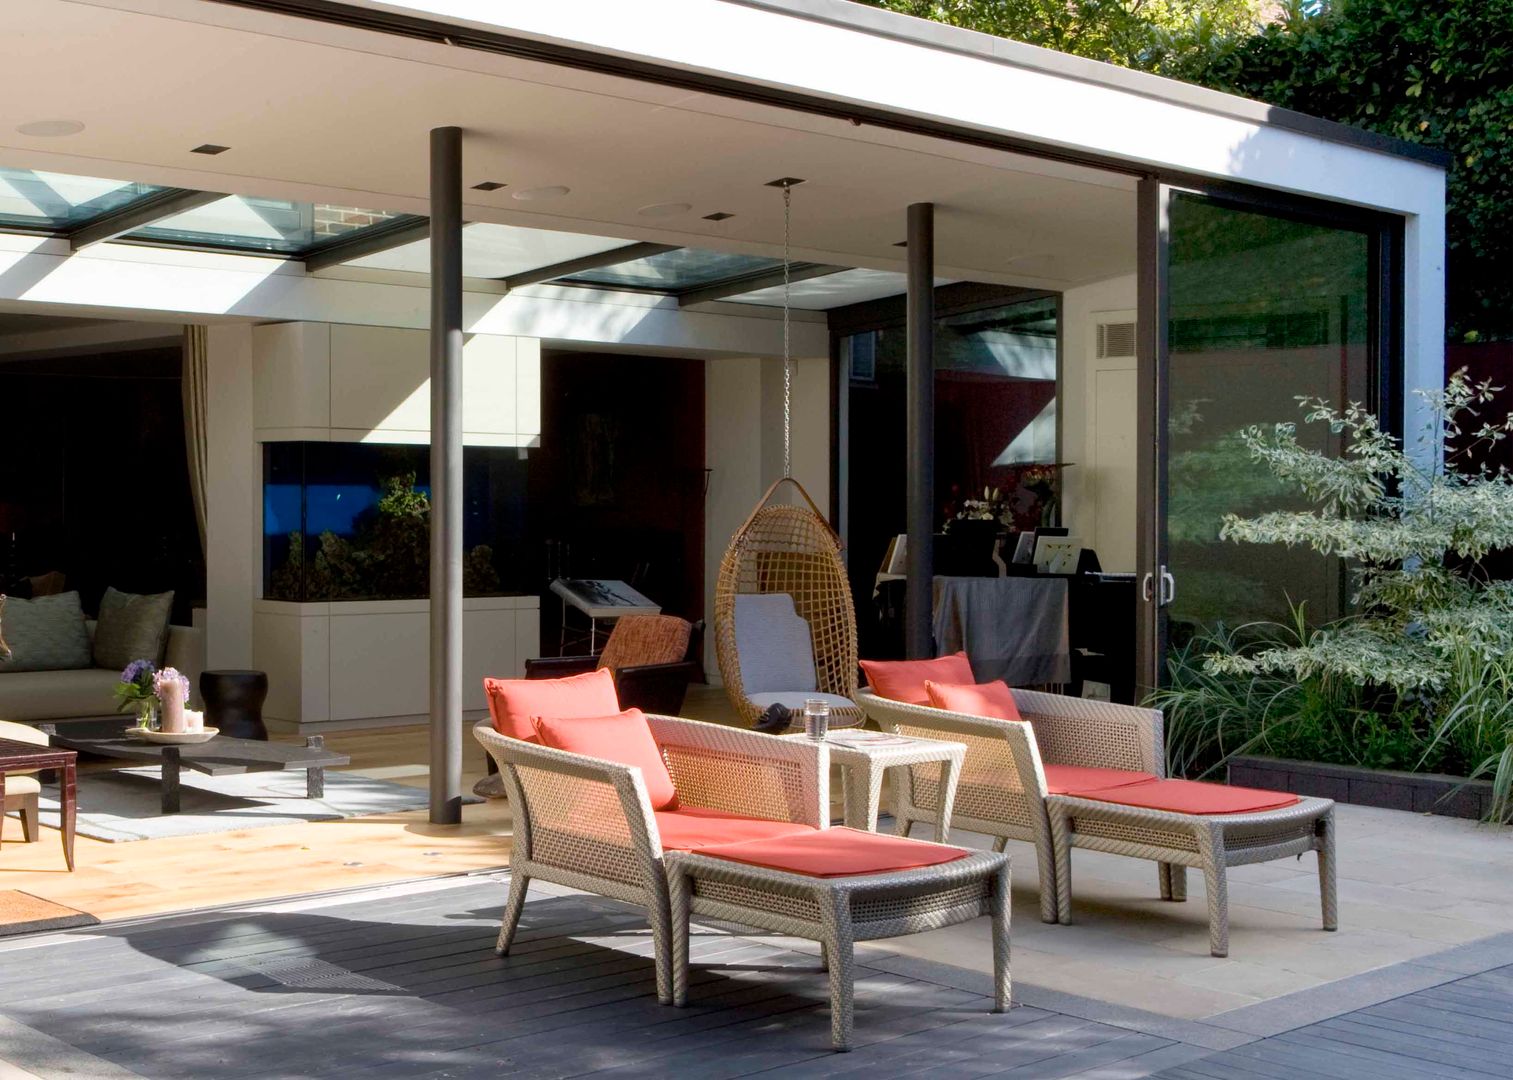 KSR Architects | Compton Avenue | Terrace homify Balcones y terrazas modernos: Ideas, imágenes y decoración